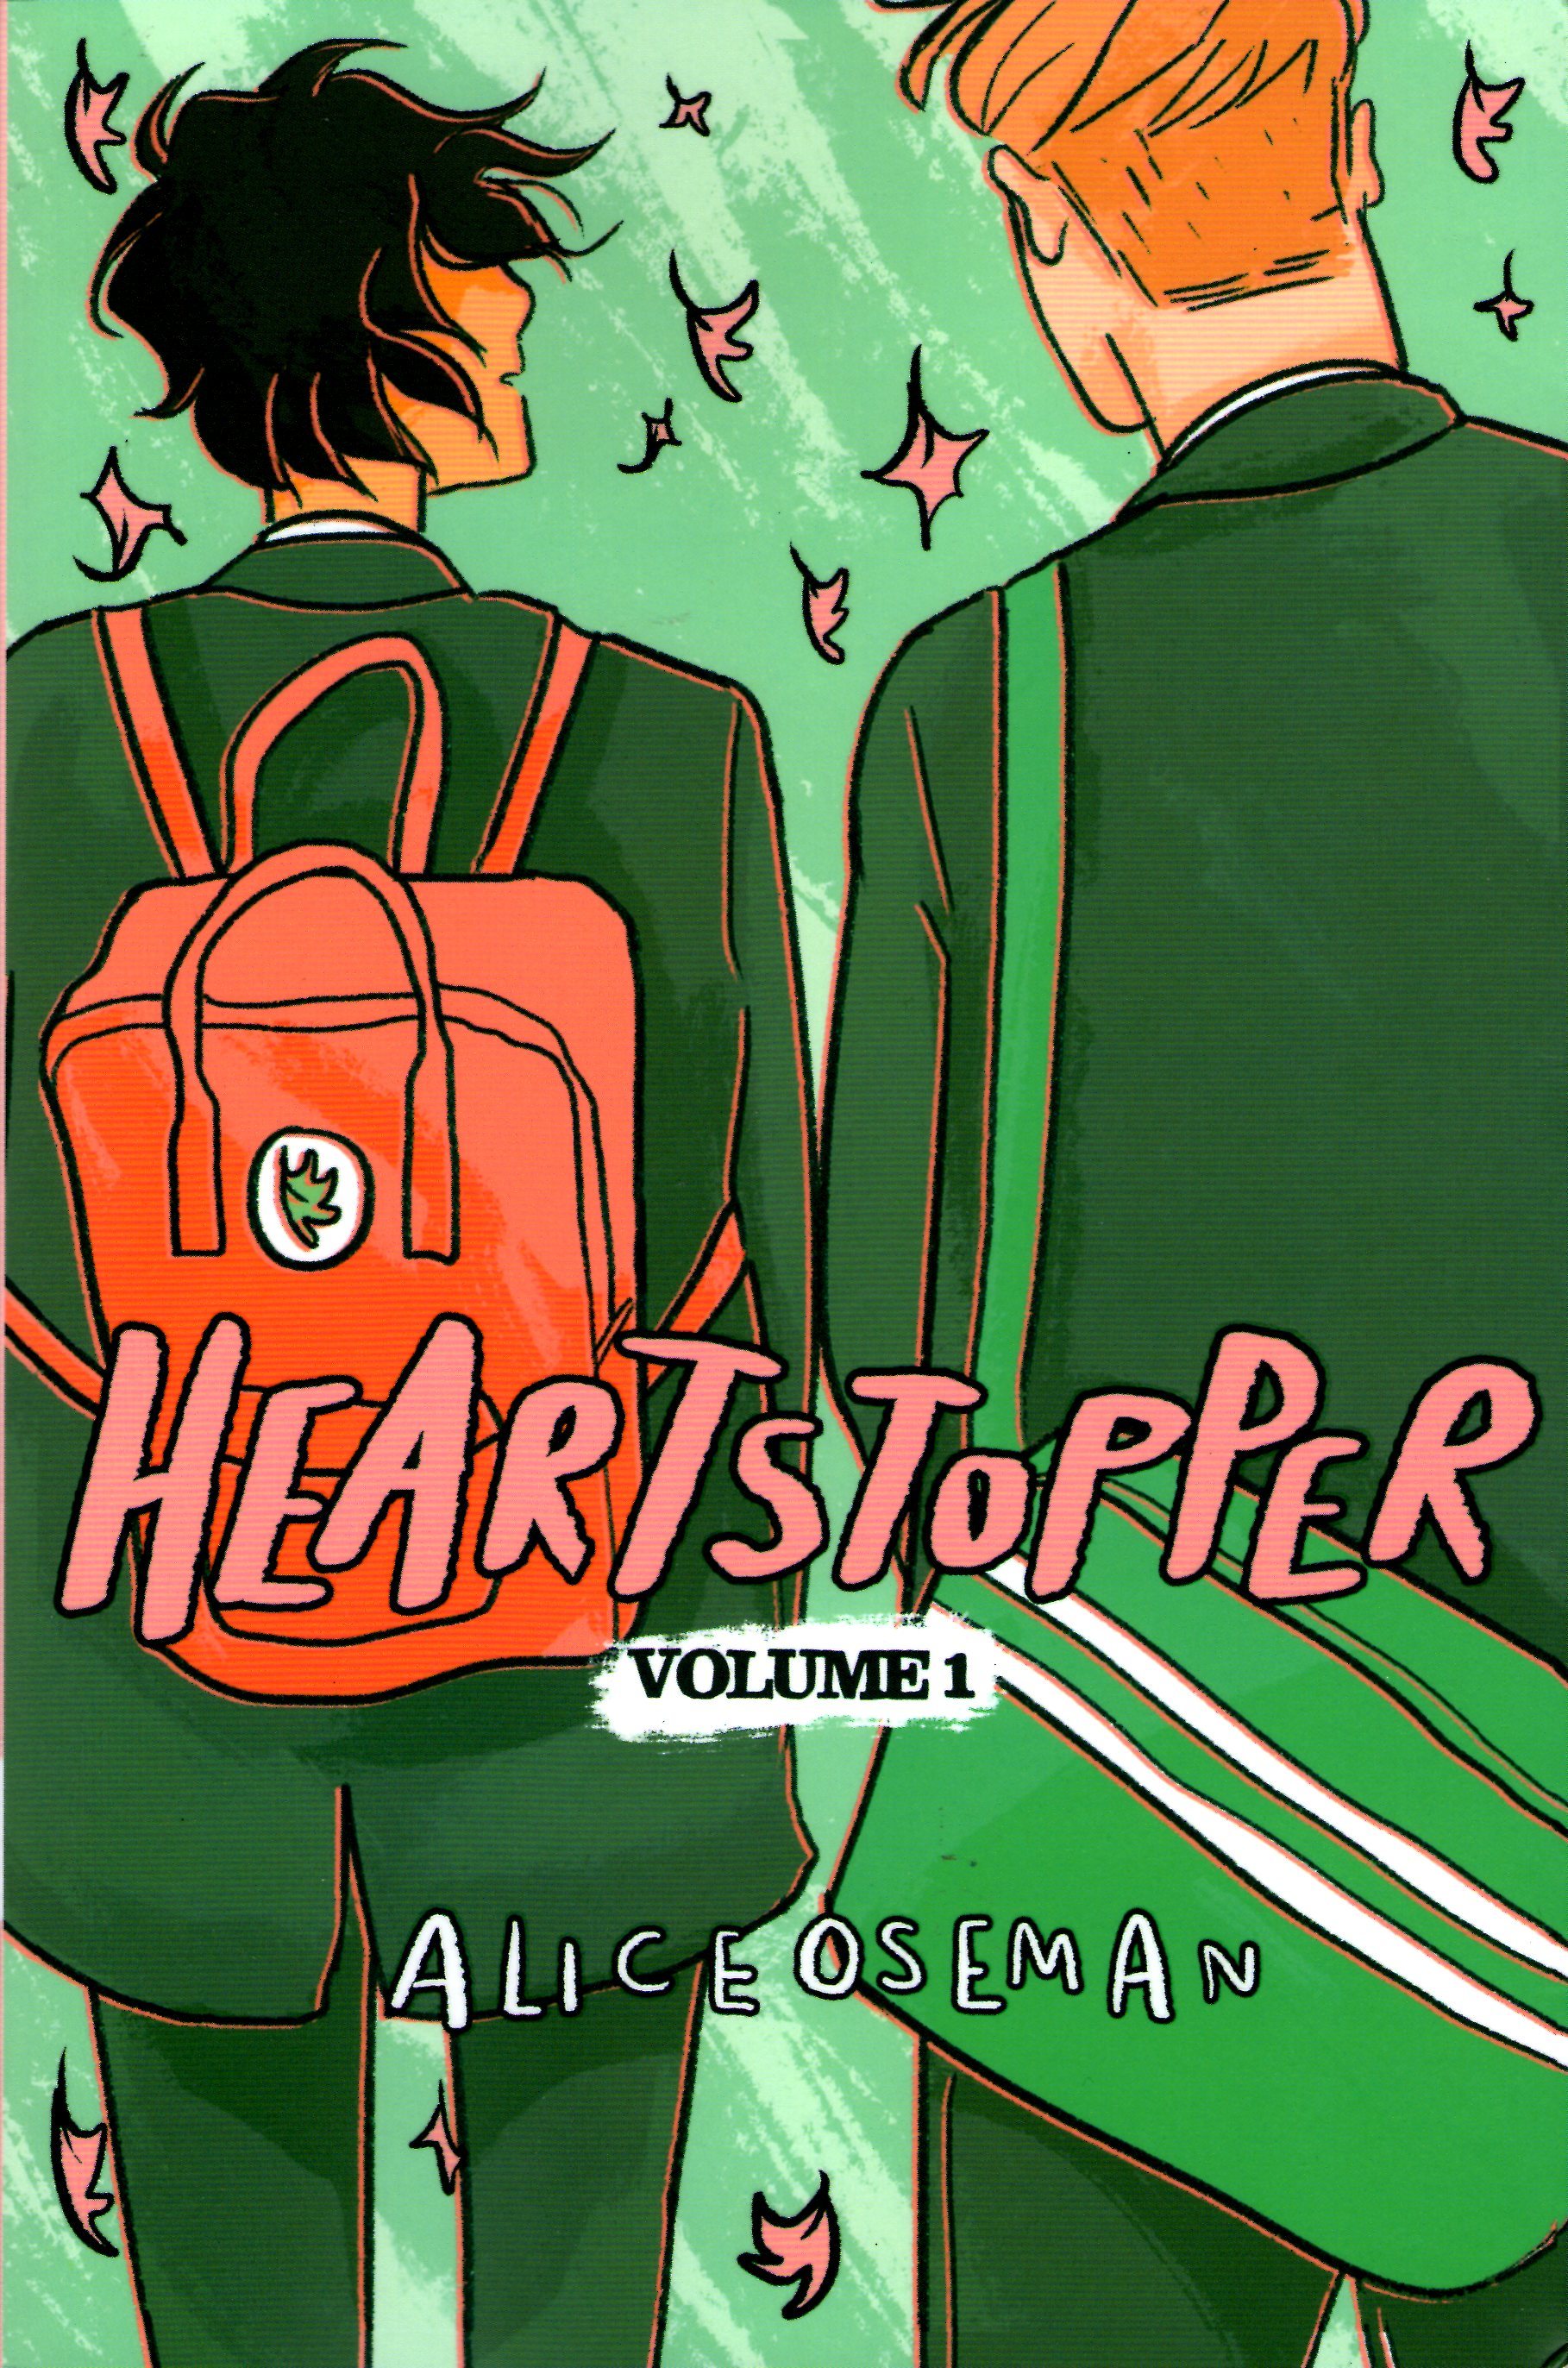 Heartstopper: Volume One (Heartstopper, #1) books